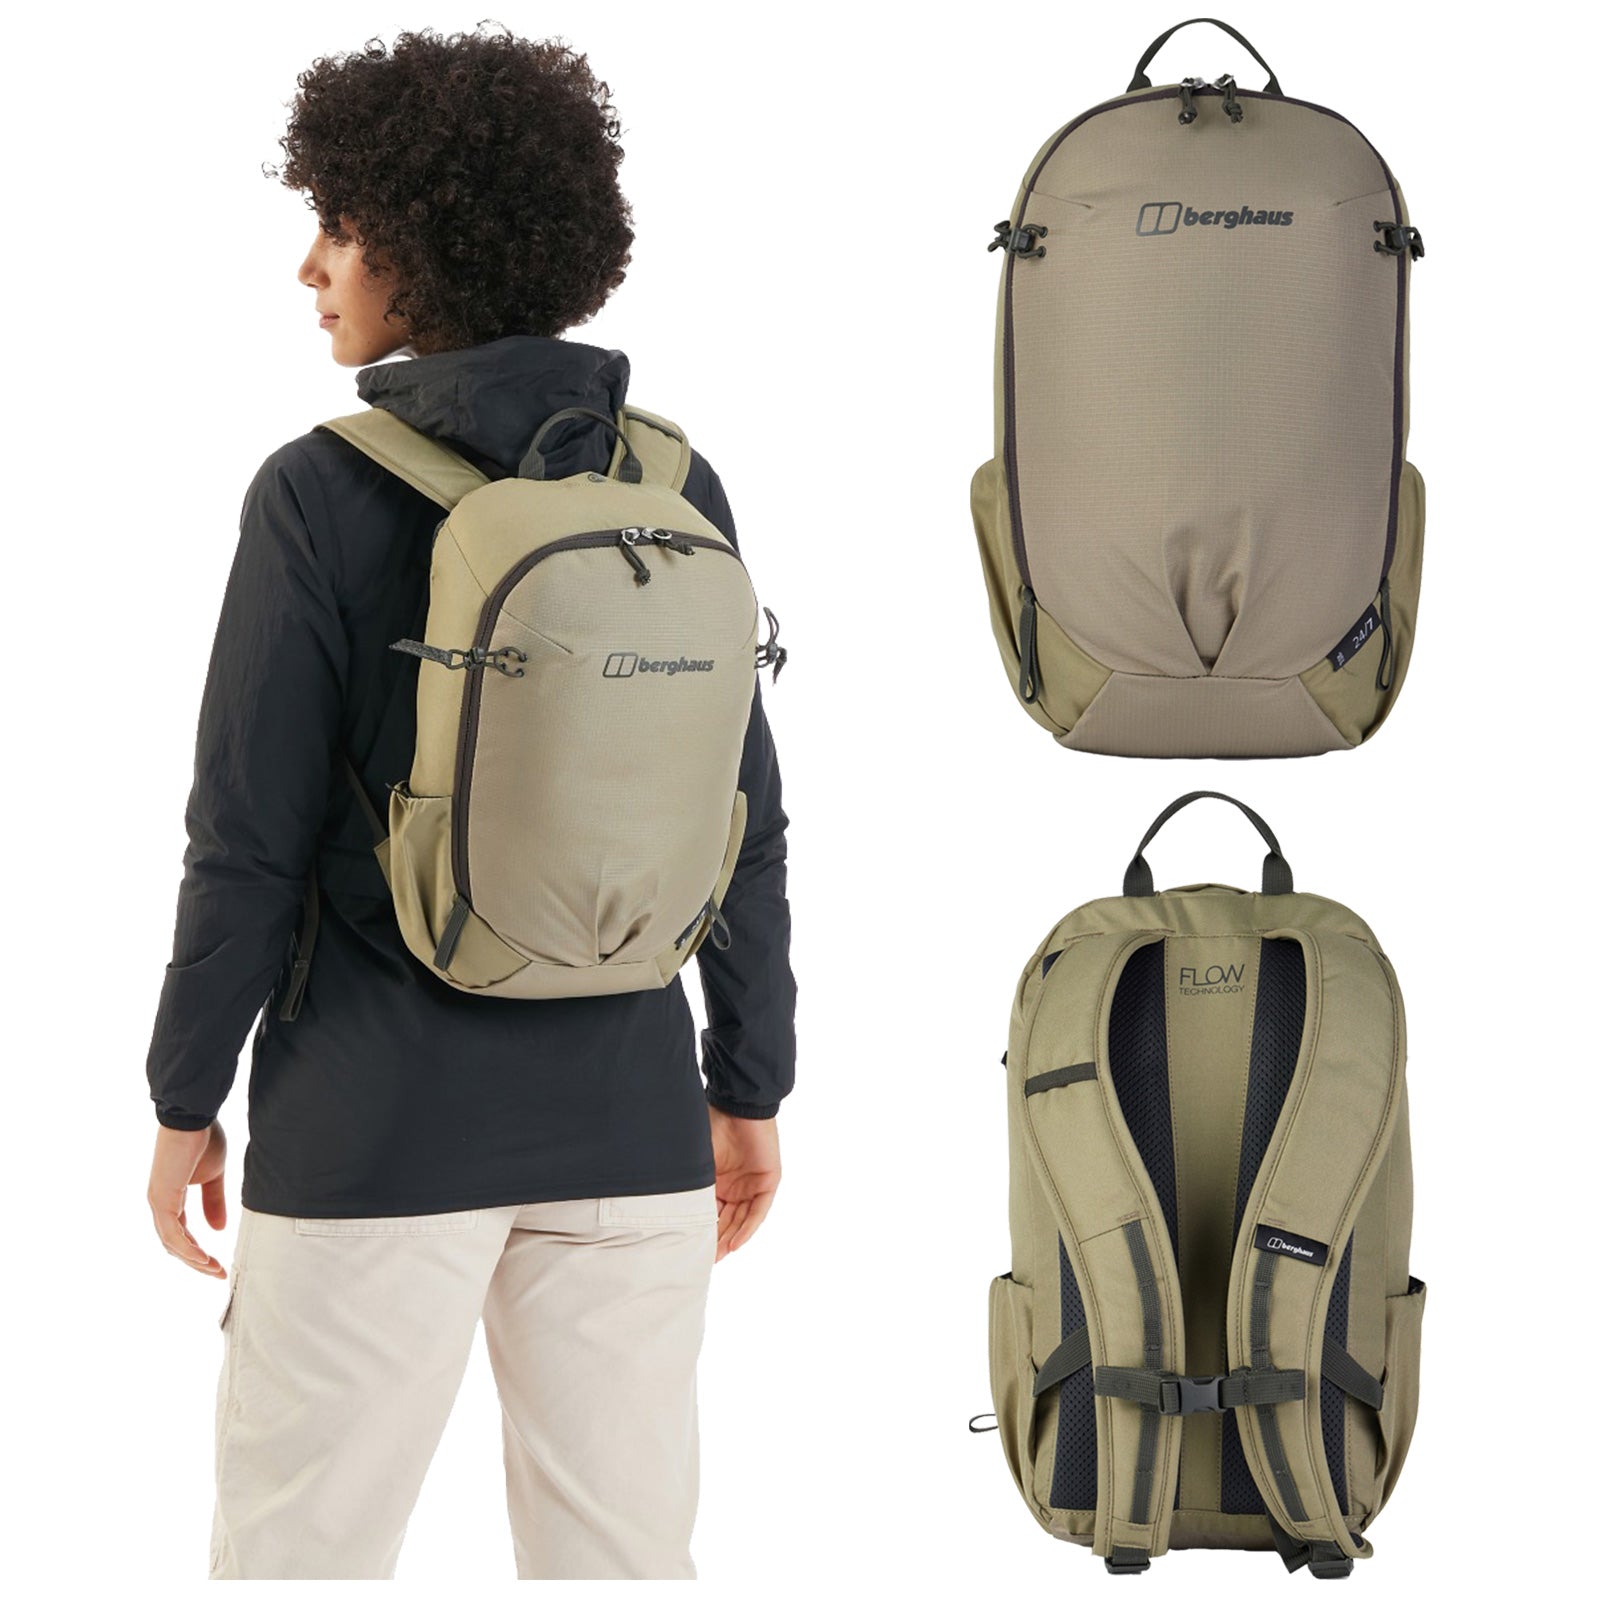 Berghaus 24/7 15L Backpack Bag